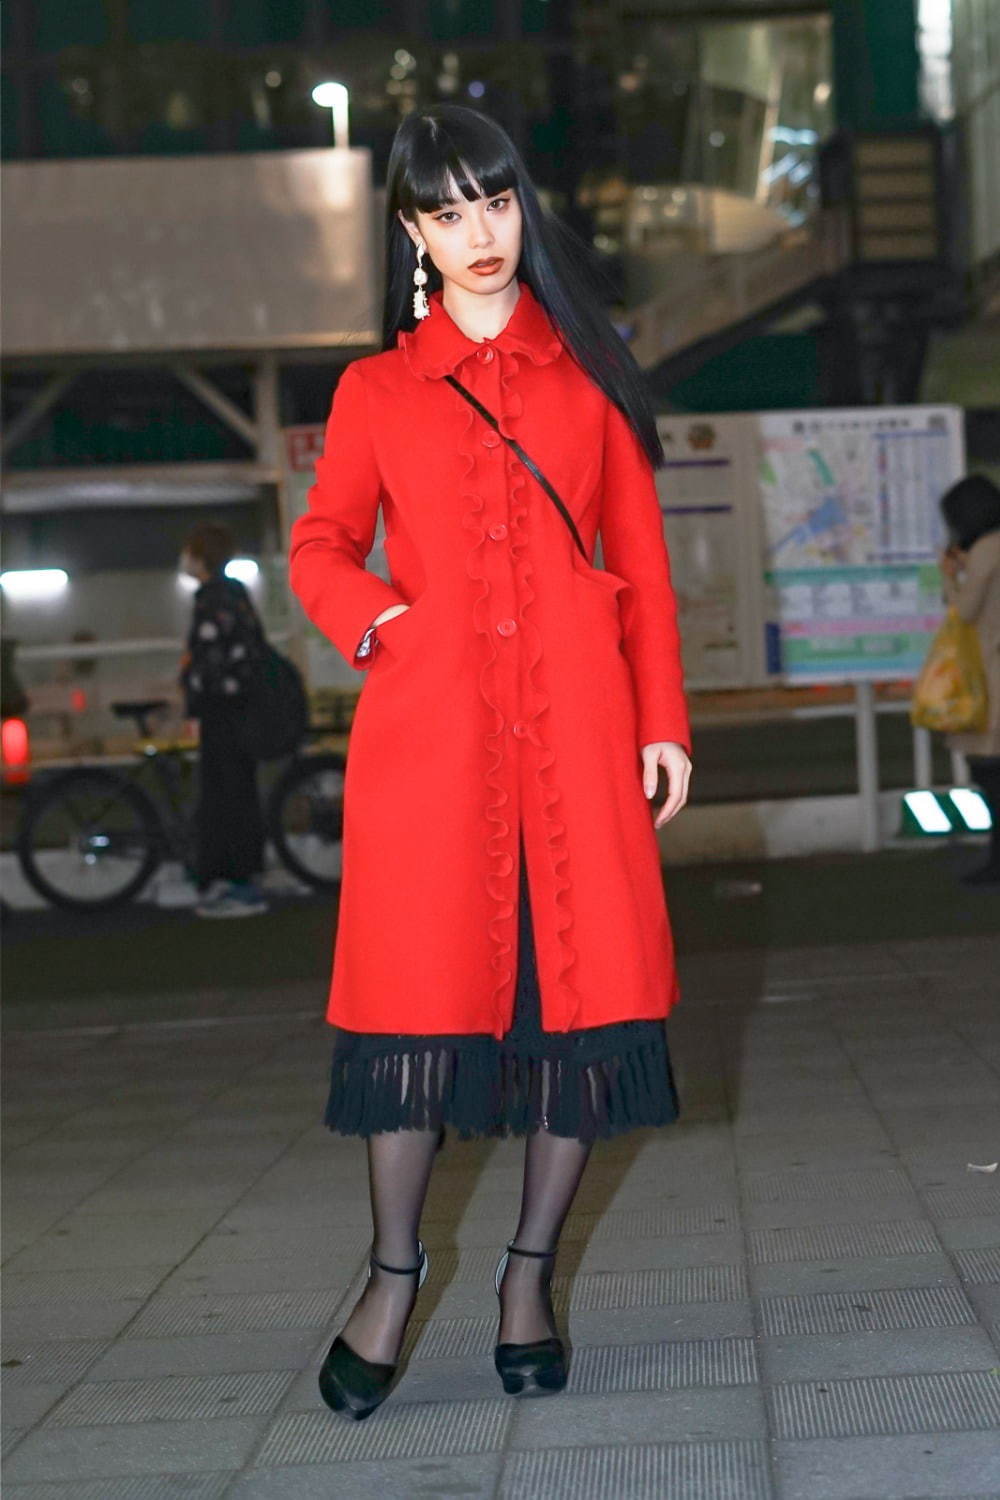 ミュウミュウ(MIU MIU)を着ているストリートスナップ - ファッションプレス